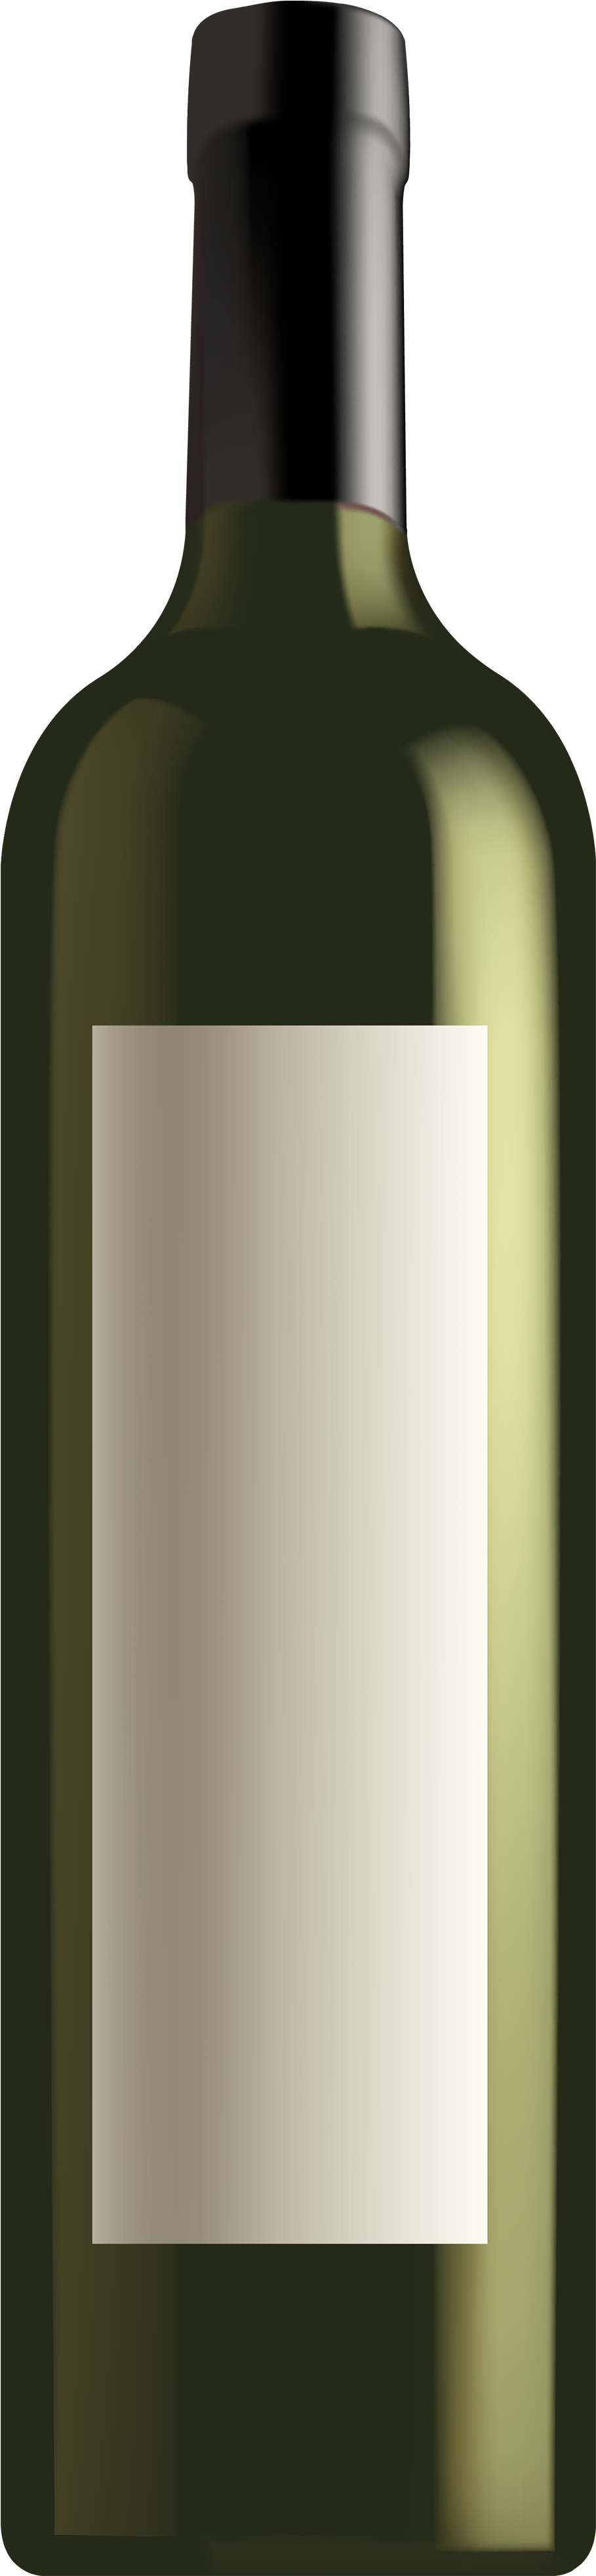 Liquor Clipart Wine Bottle Outline - Clip Art (1164x4000), Png Download